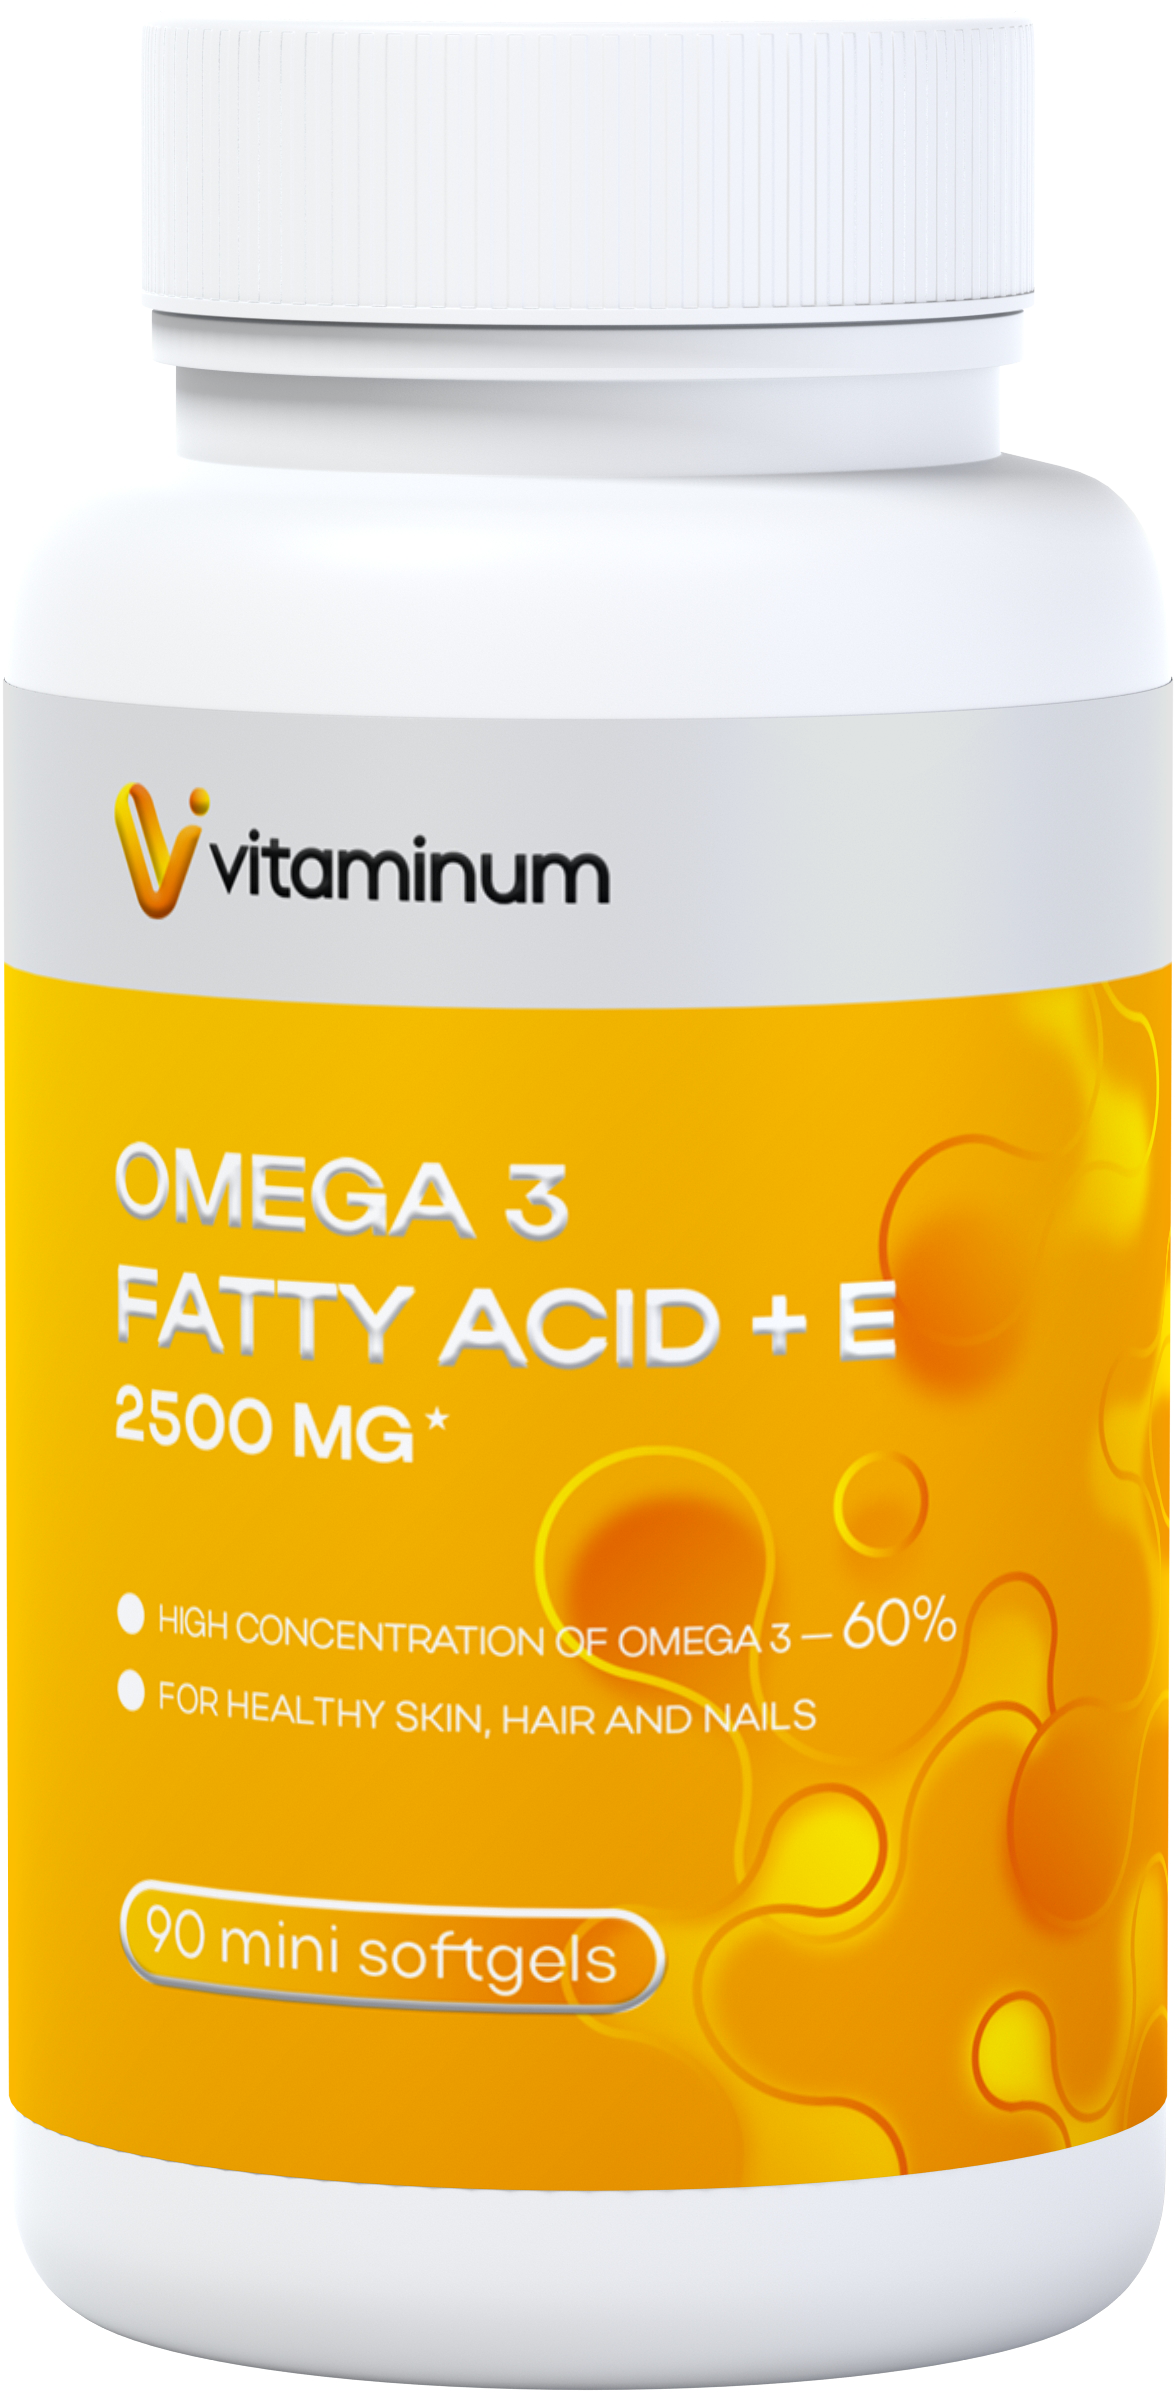  Vitaminum ОМЕГА 3 60% + витамин Е (2500 MG*) 90 капсул 700 мг   в Крымске